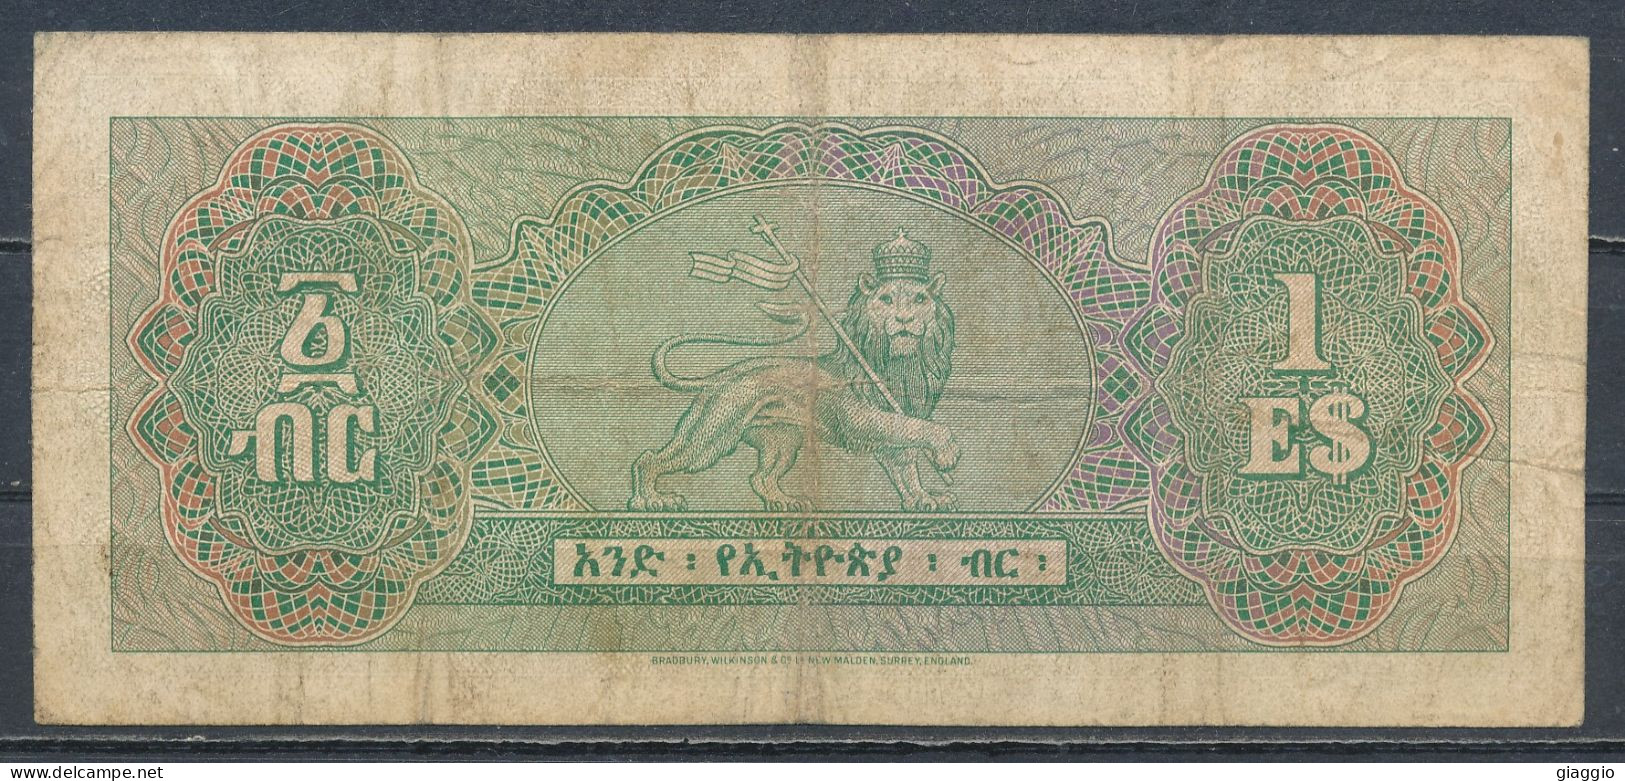 °°° ETHIOPIA 1 DOLLAR 1961 °°° - Ethiopie